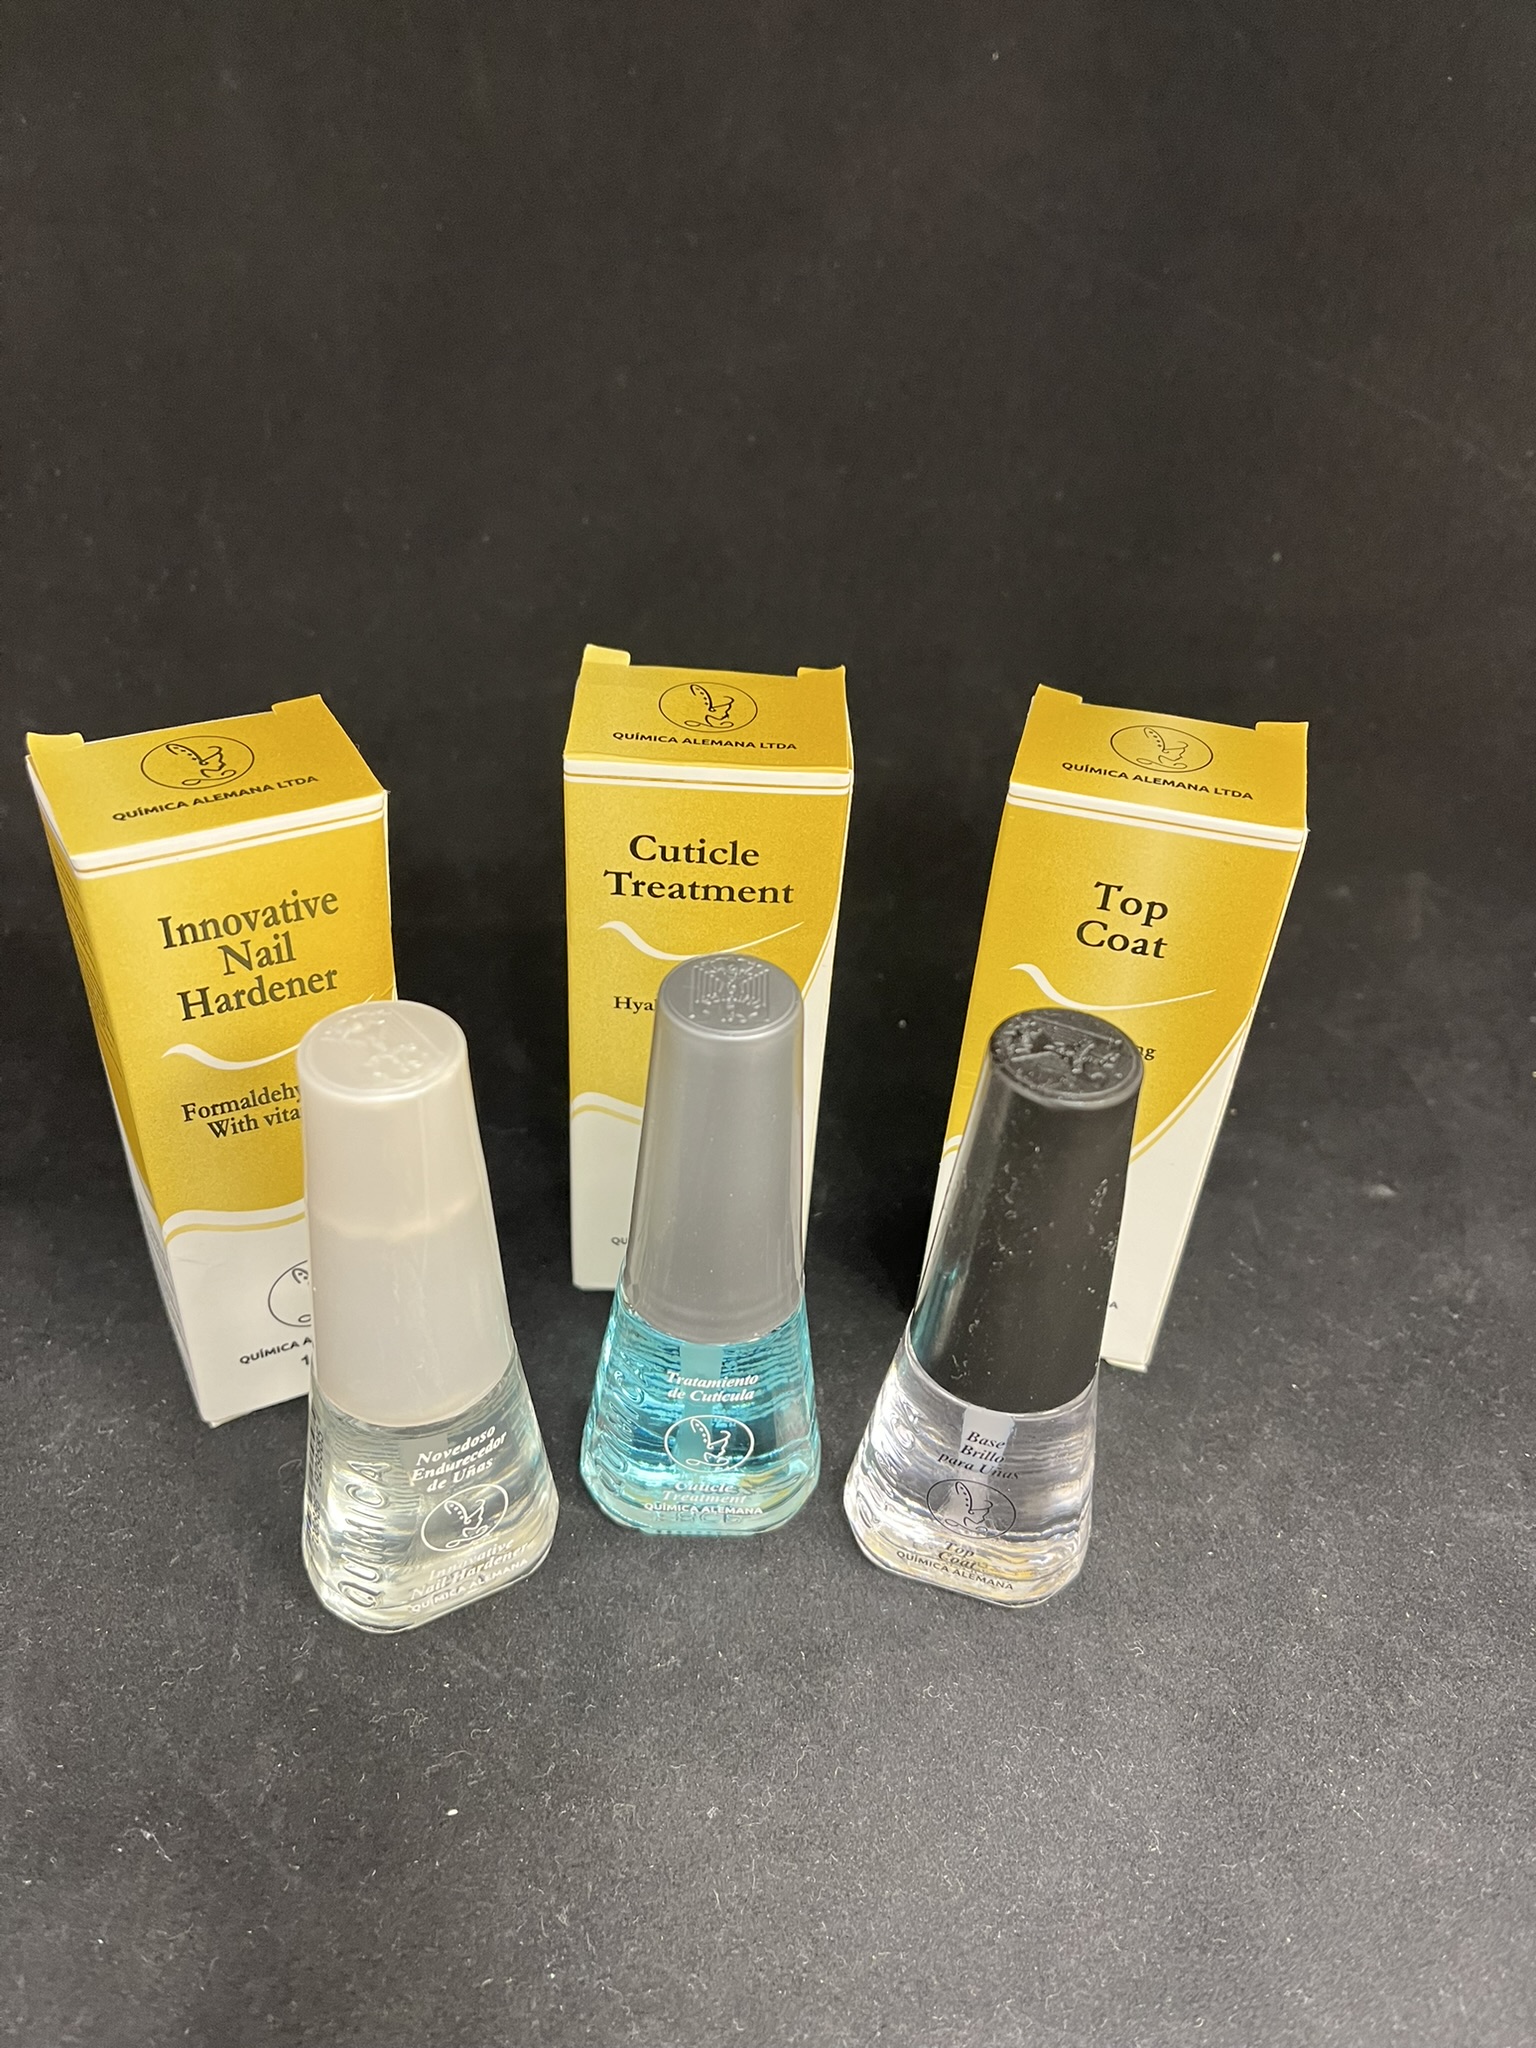 Quimica Nagelpflege SET 3 x 14ml Härter, Top Coat und Nagelhaut Behandlung